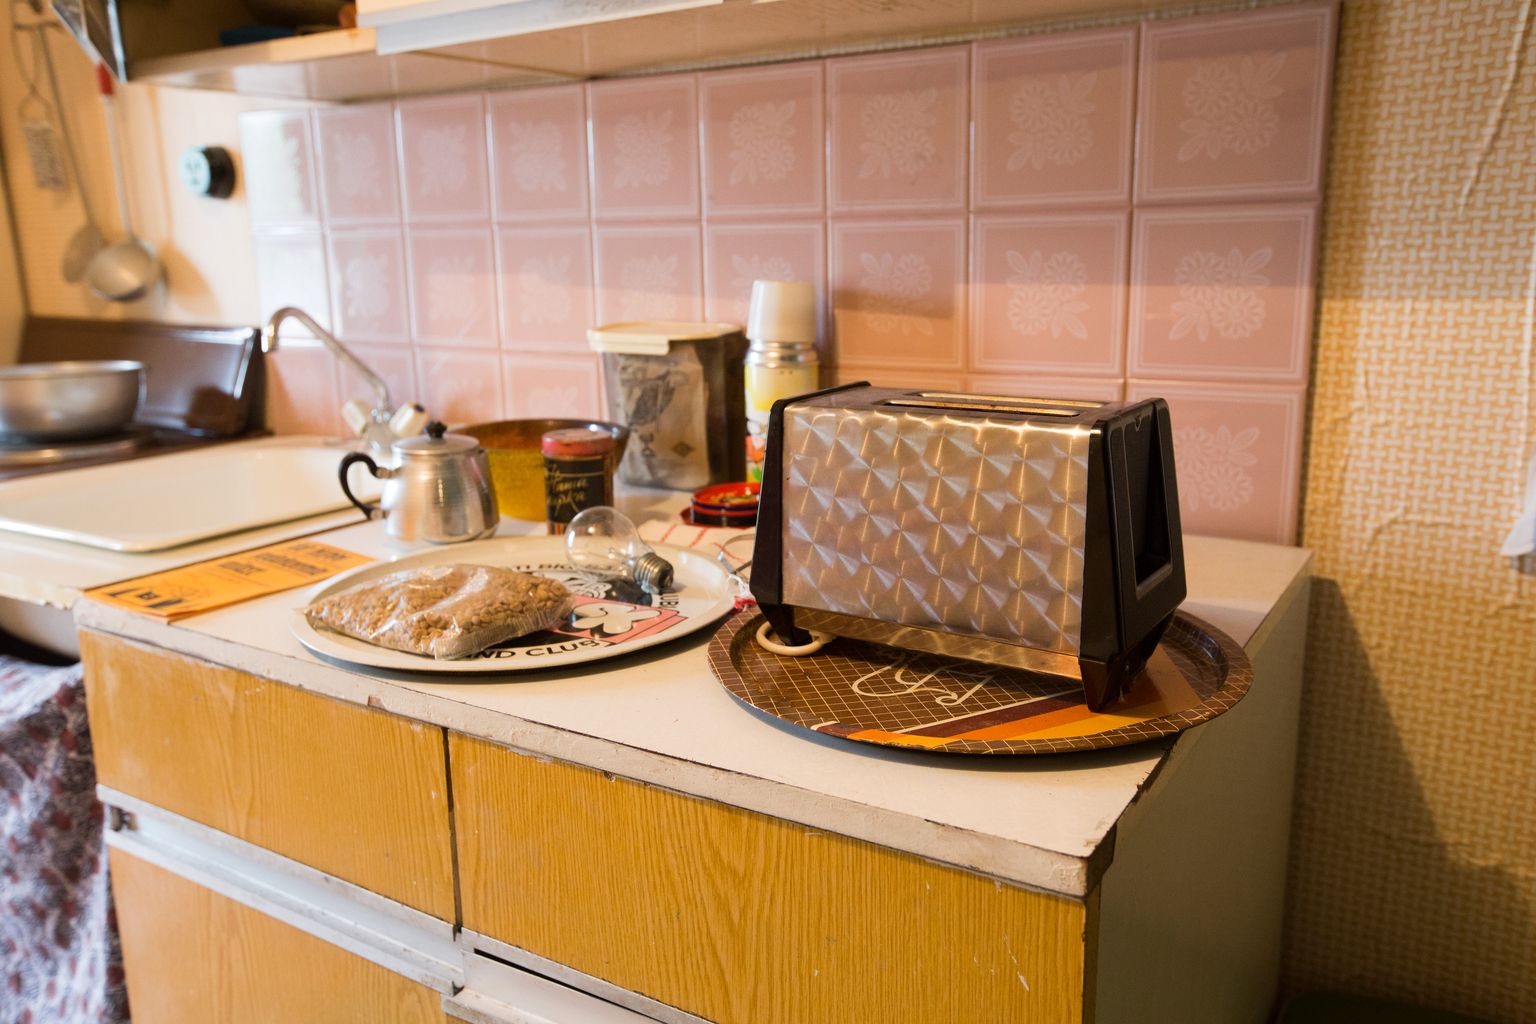 Ohtlikuks võib muutuda ka köögis asuv röster. Foto on illustratiivne.